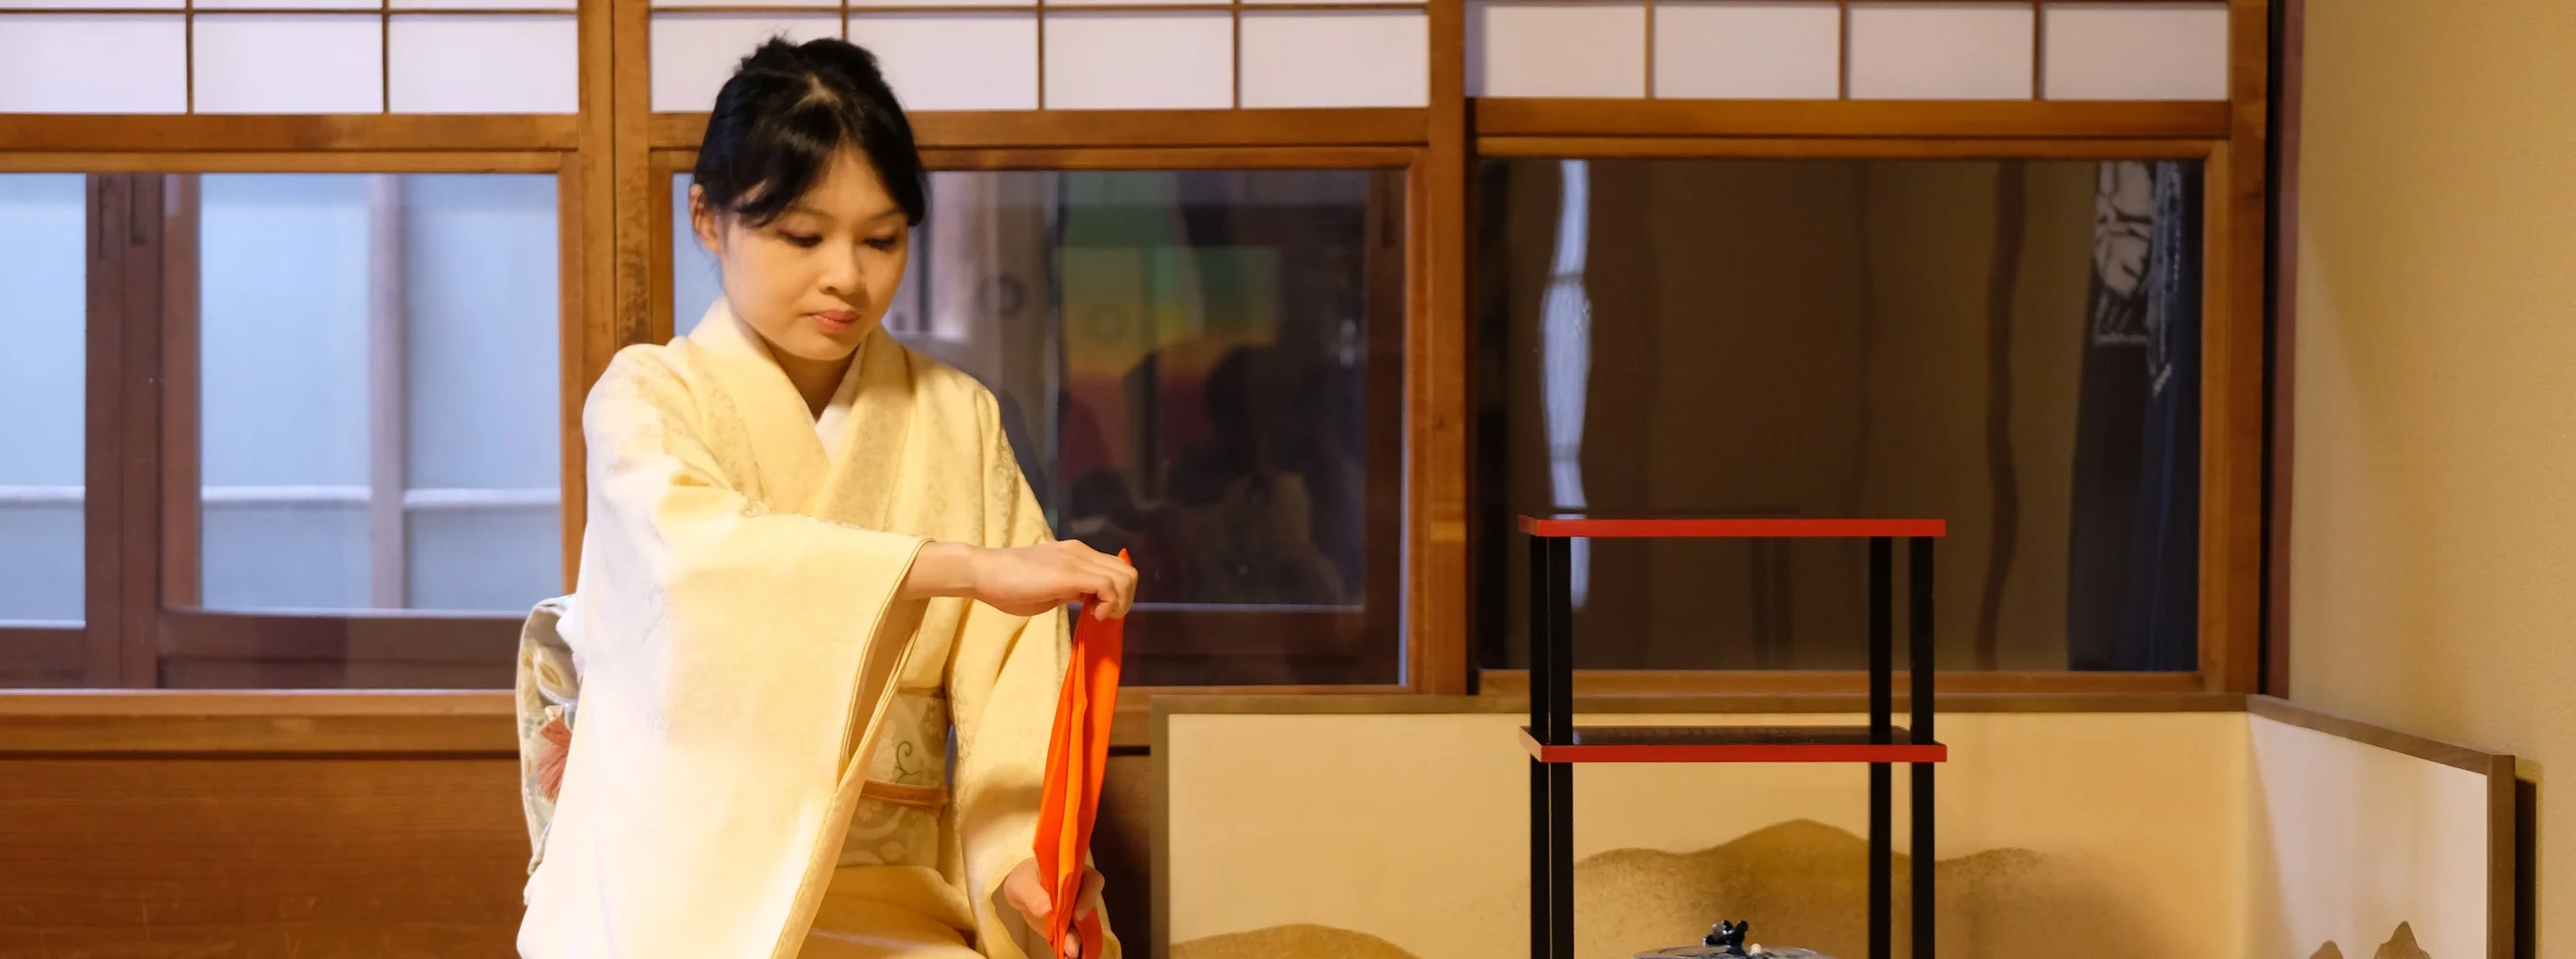 Online Urasenke Japanese Tea Ceremony Experience